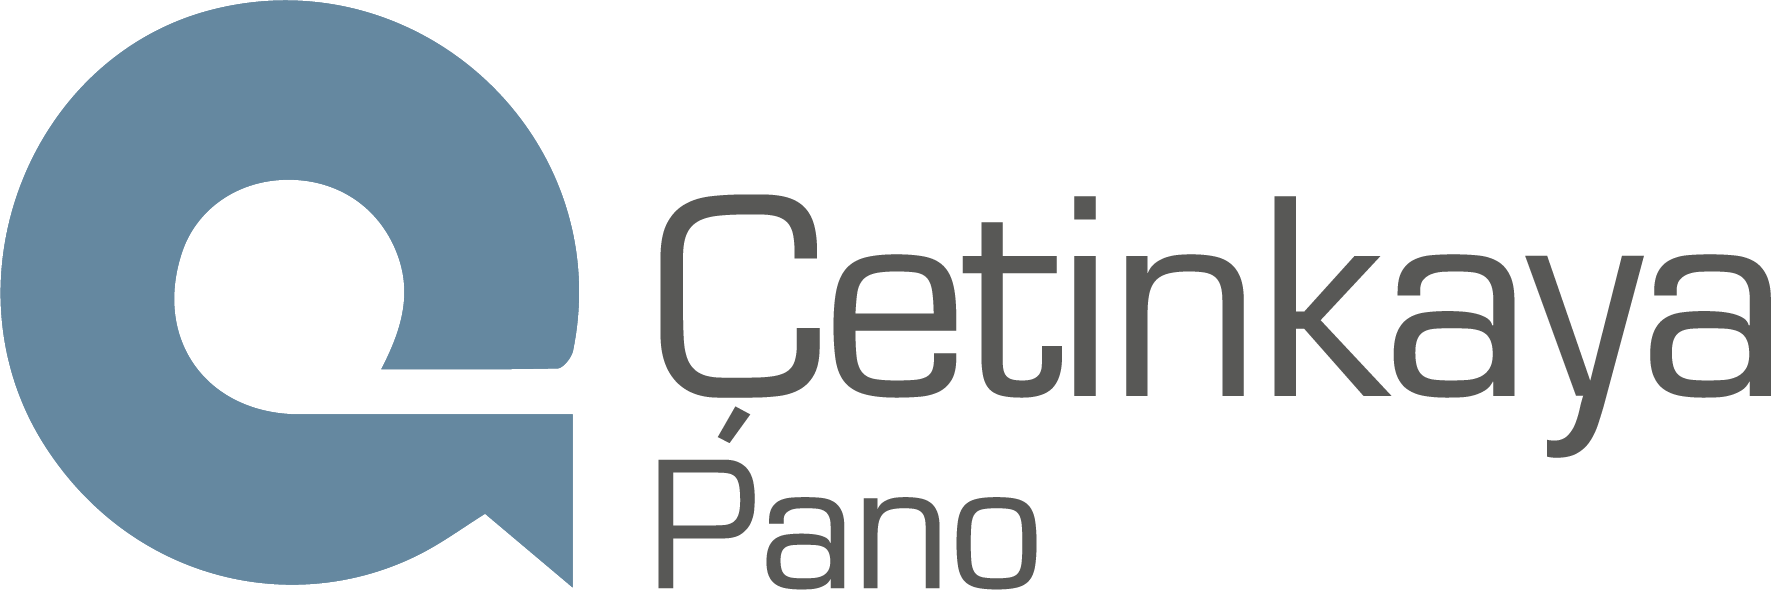 cetin kaya logo.png (34 KB)